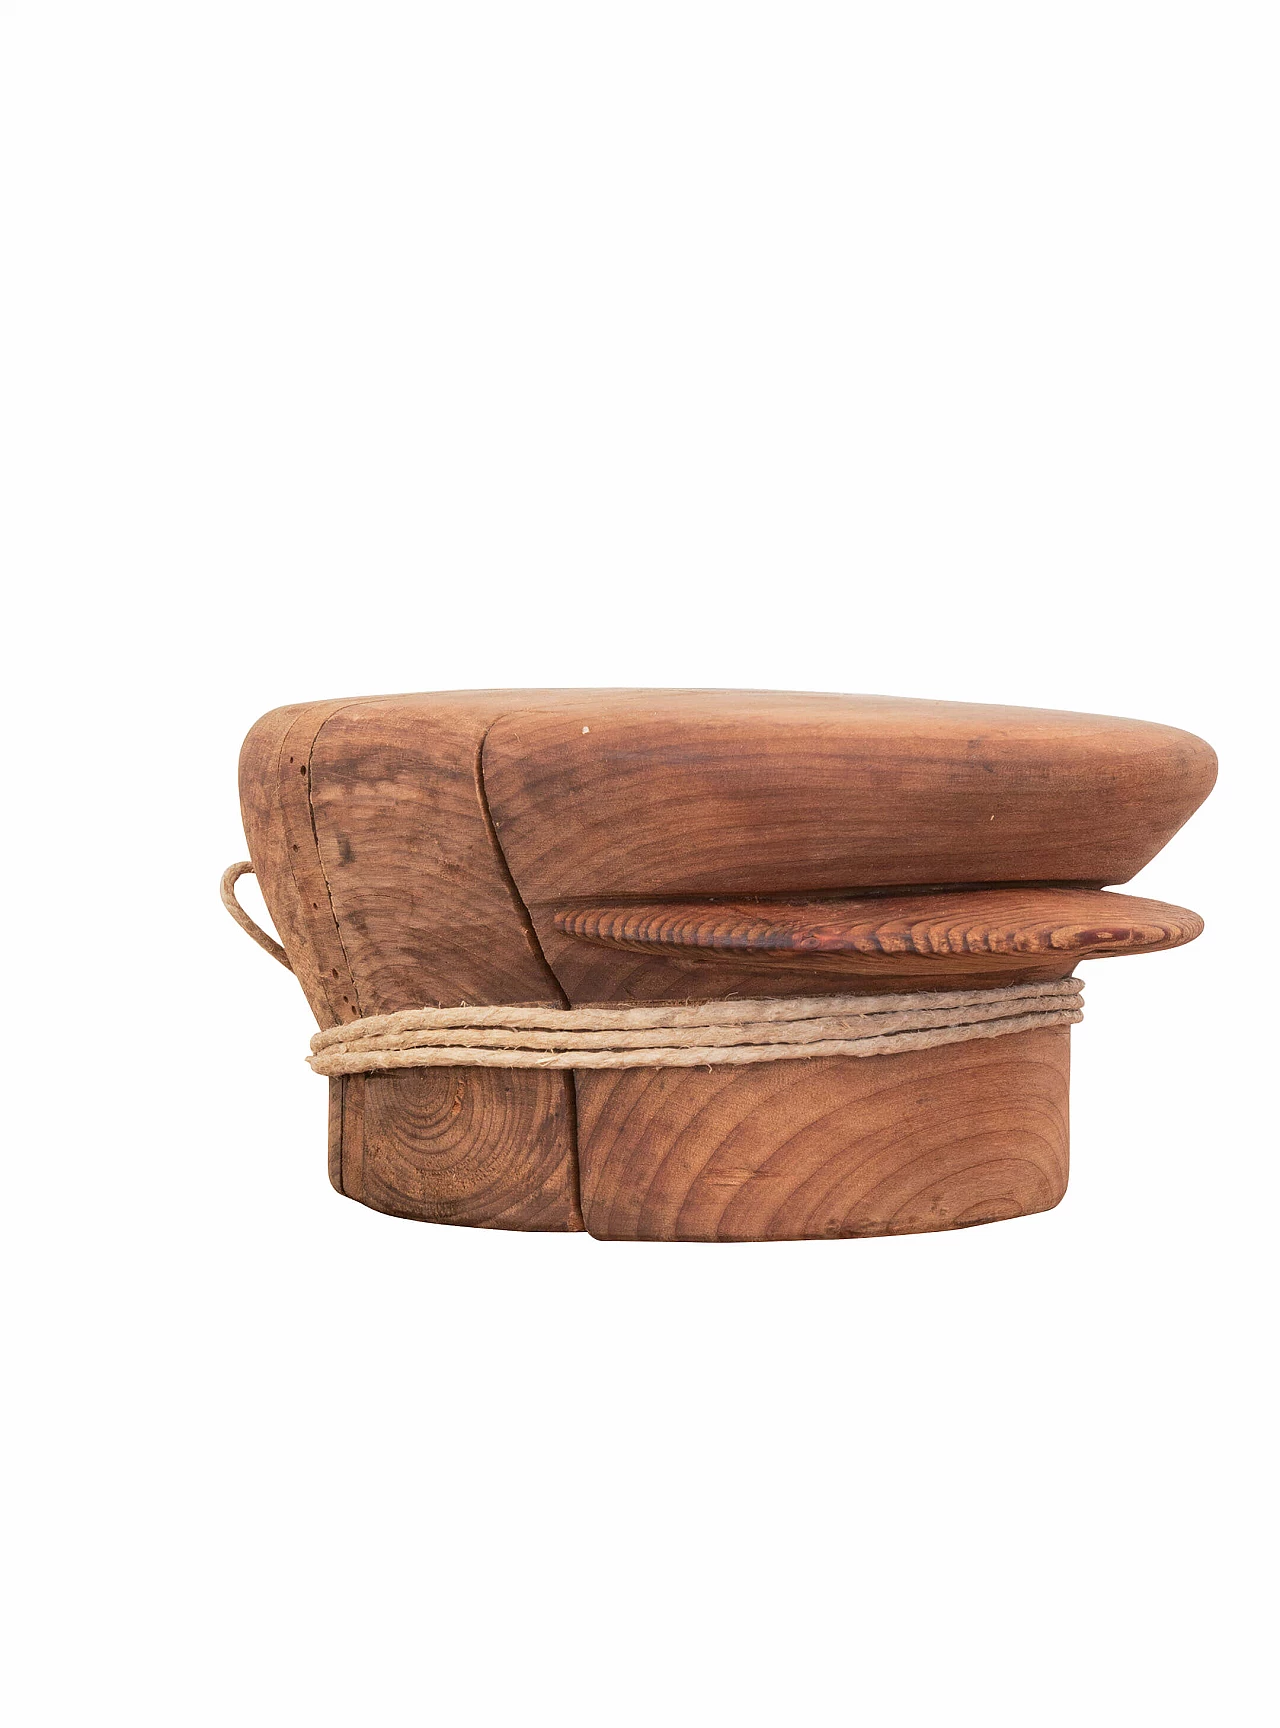 Antico stampo per cappelli in legno, inizio 900 1089096